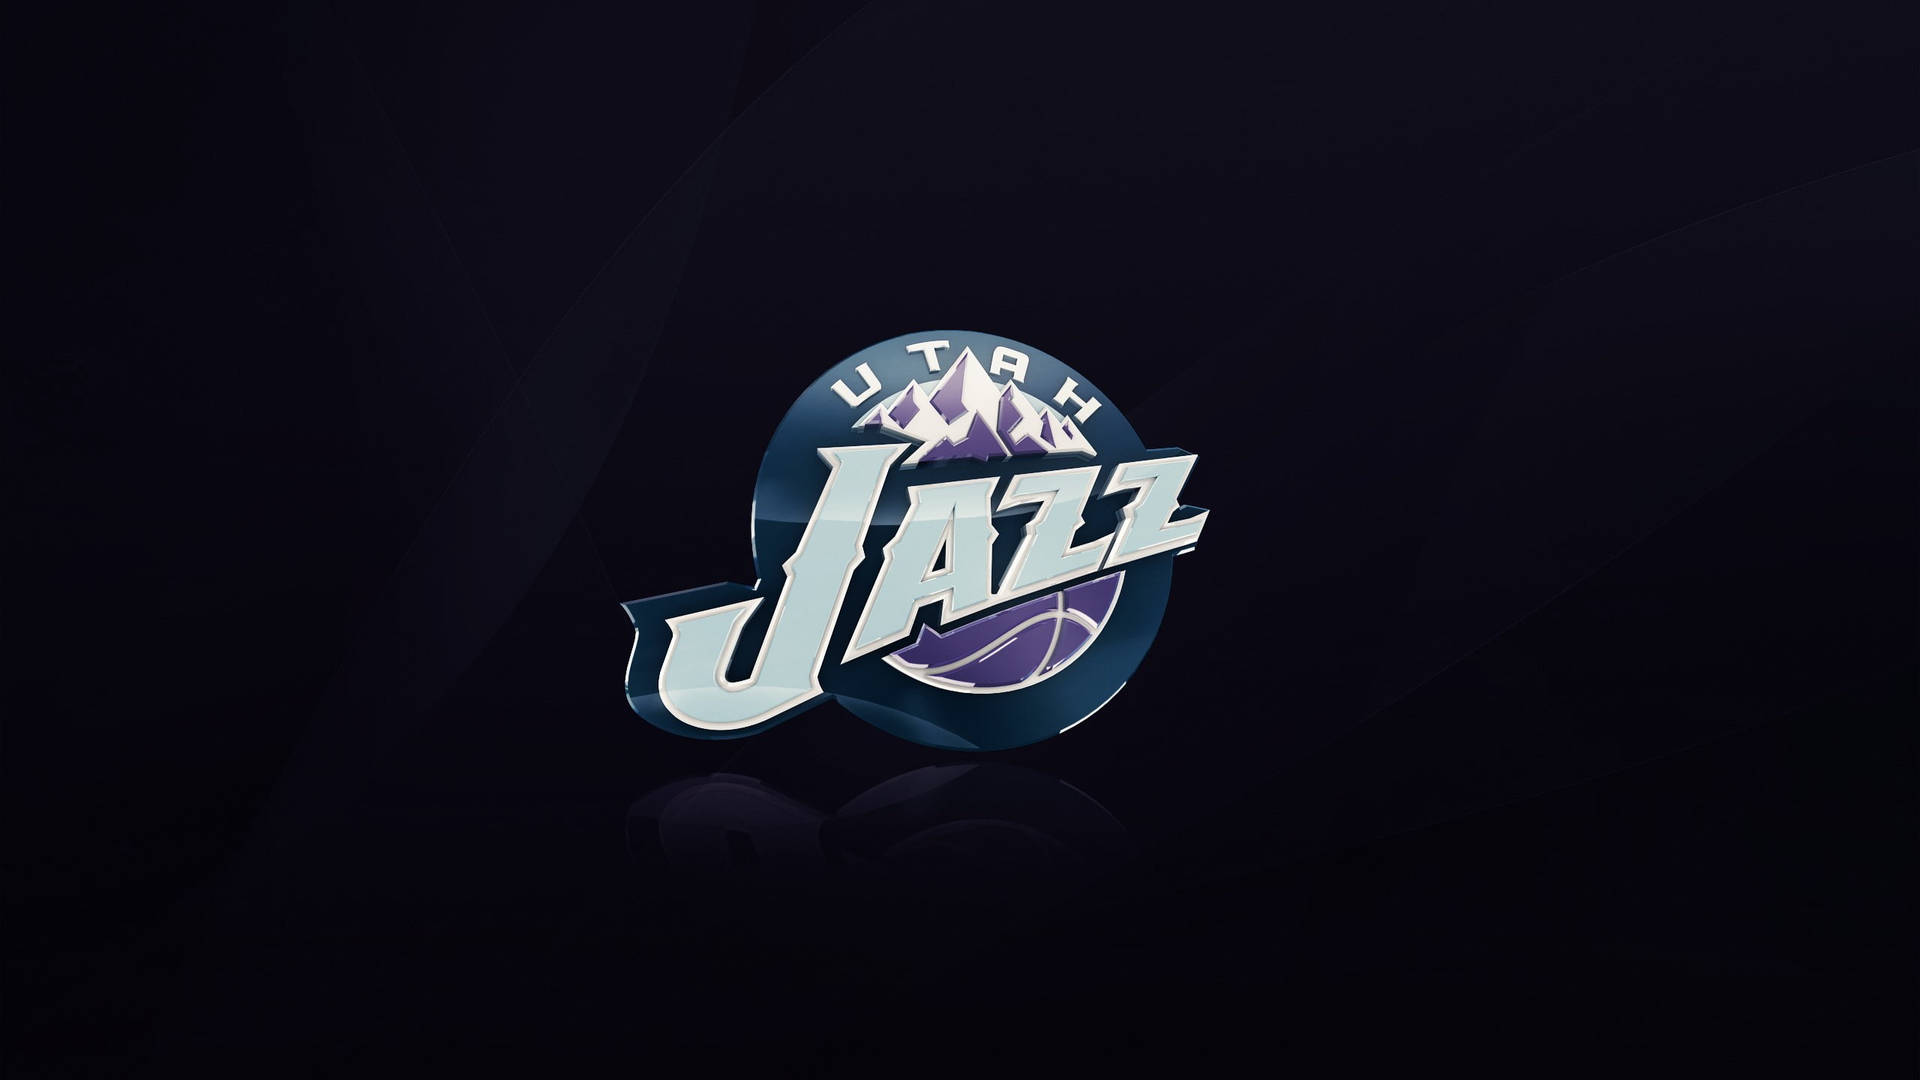 Imágenes De Utah Jazz